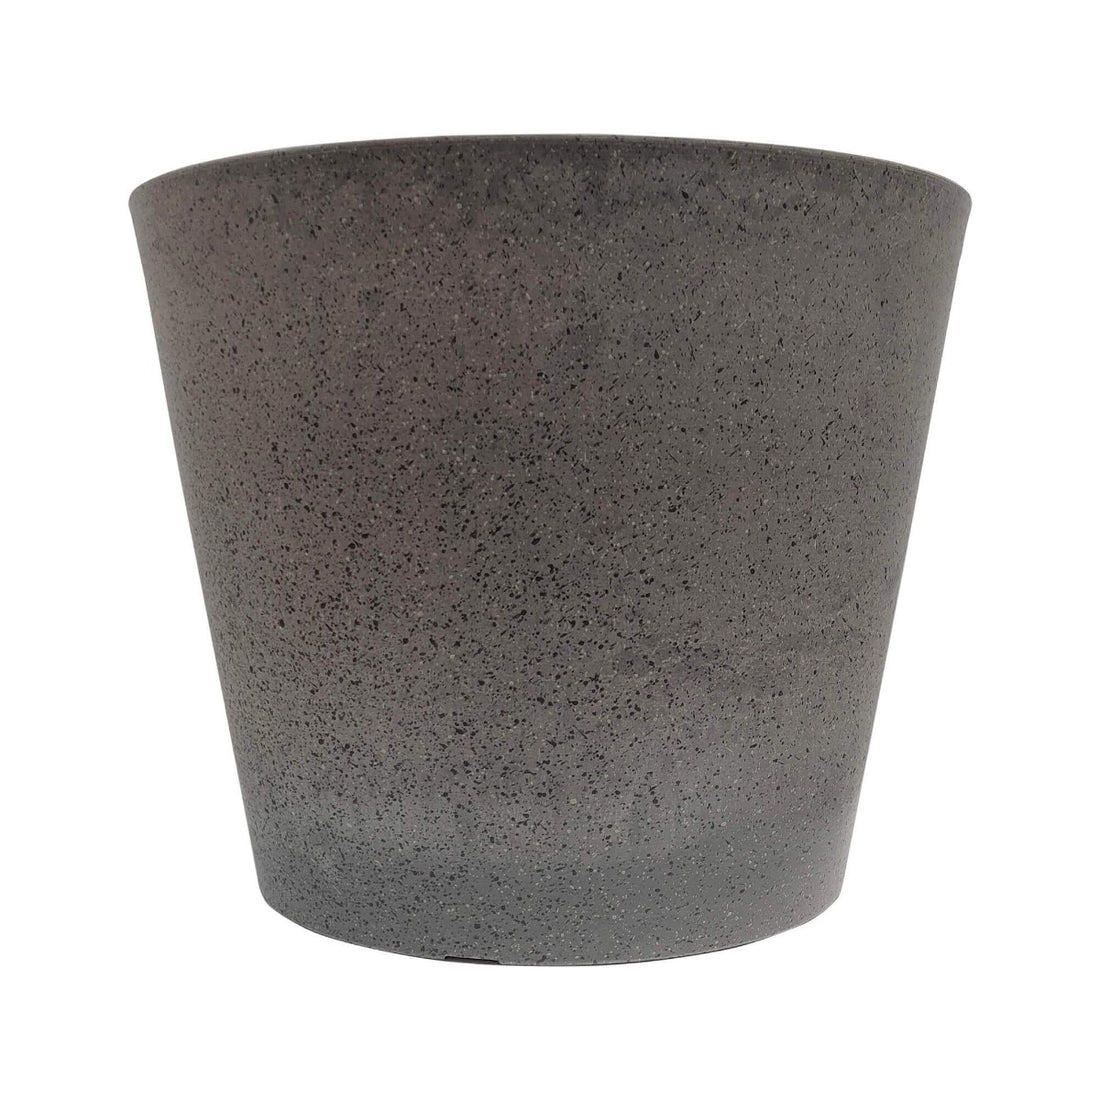 garden pot grey stone